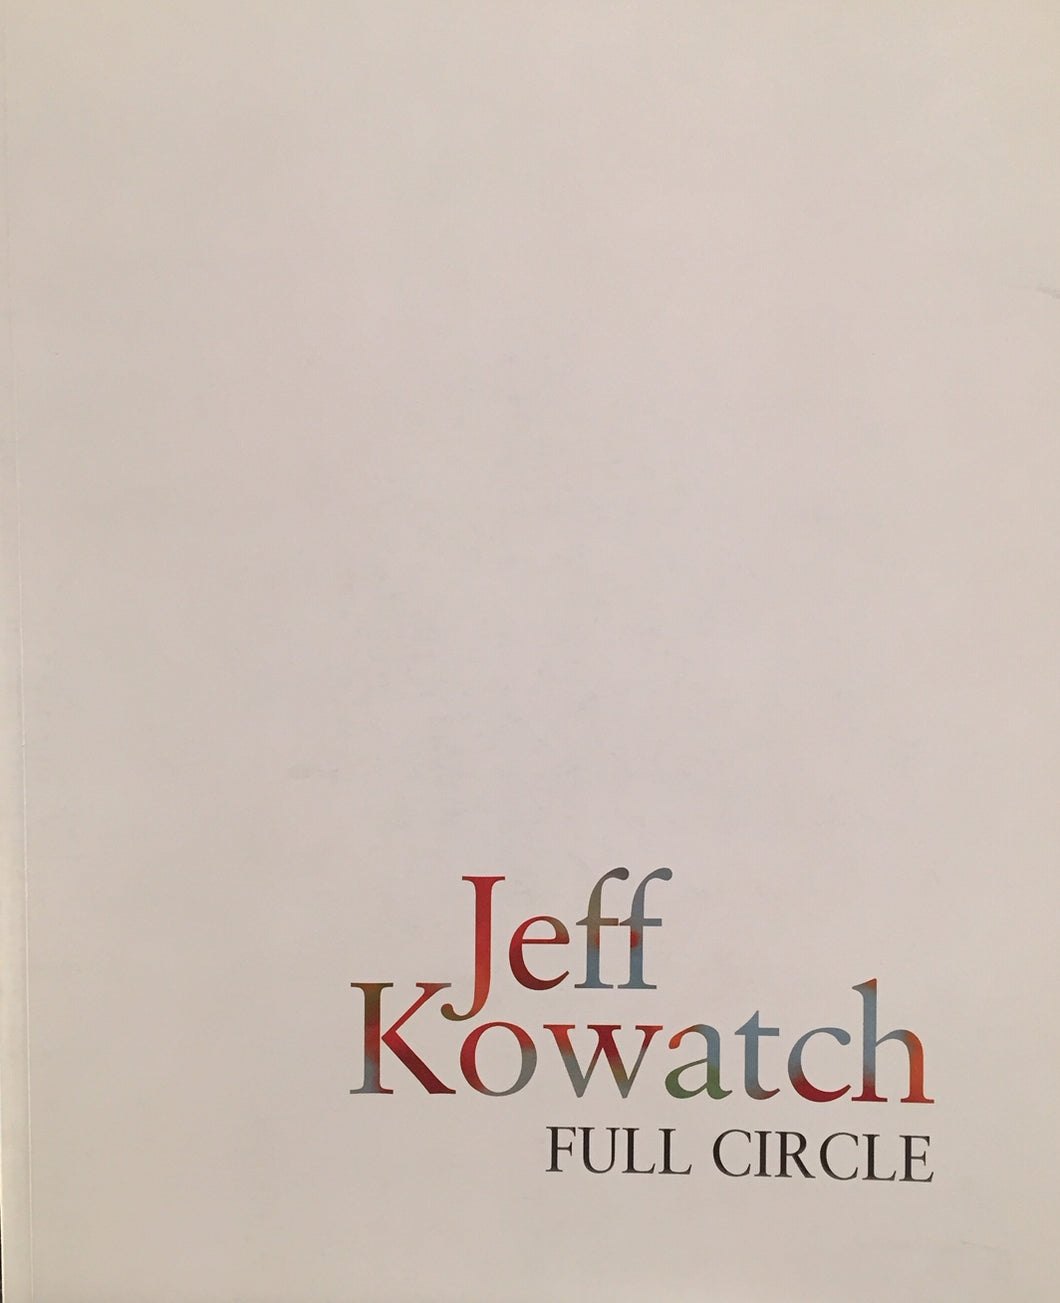 Jeff Kowatch. <i> Catalogue de l’exposition Full Circle </i>. Editions Galerie La Forest Divonne avec la Galerie Faider, 2018.